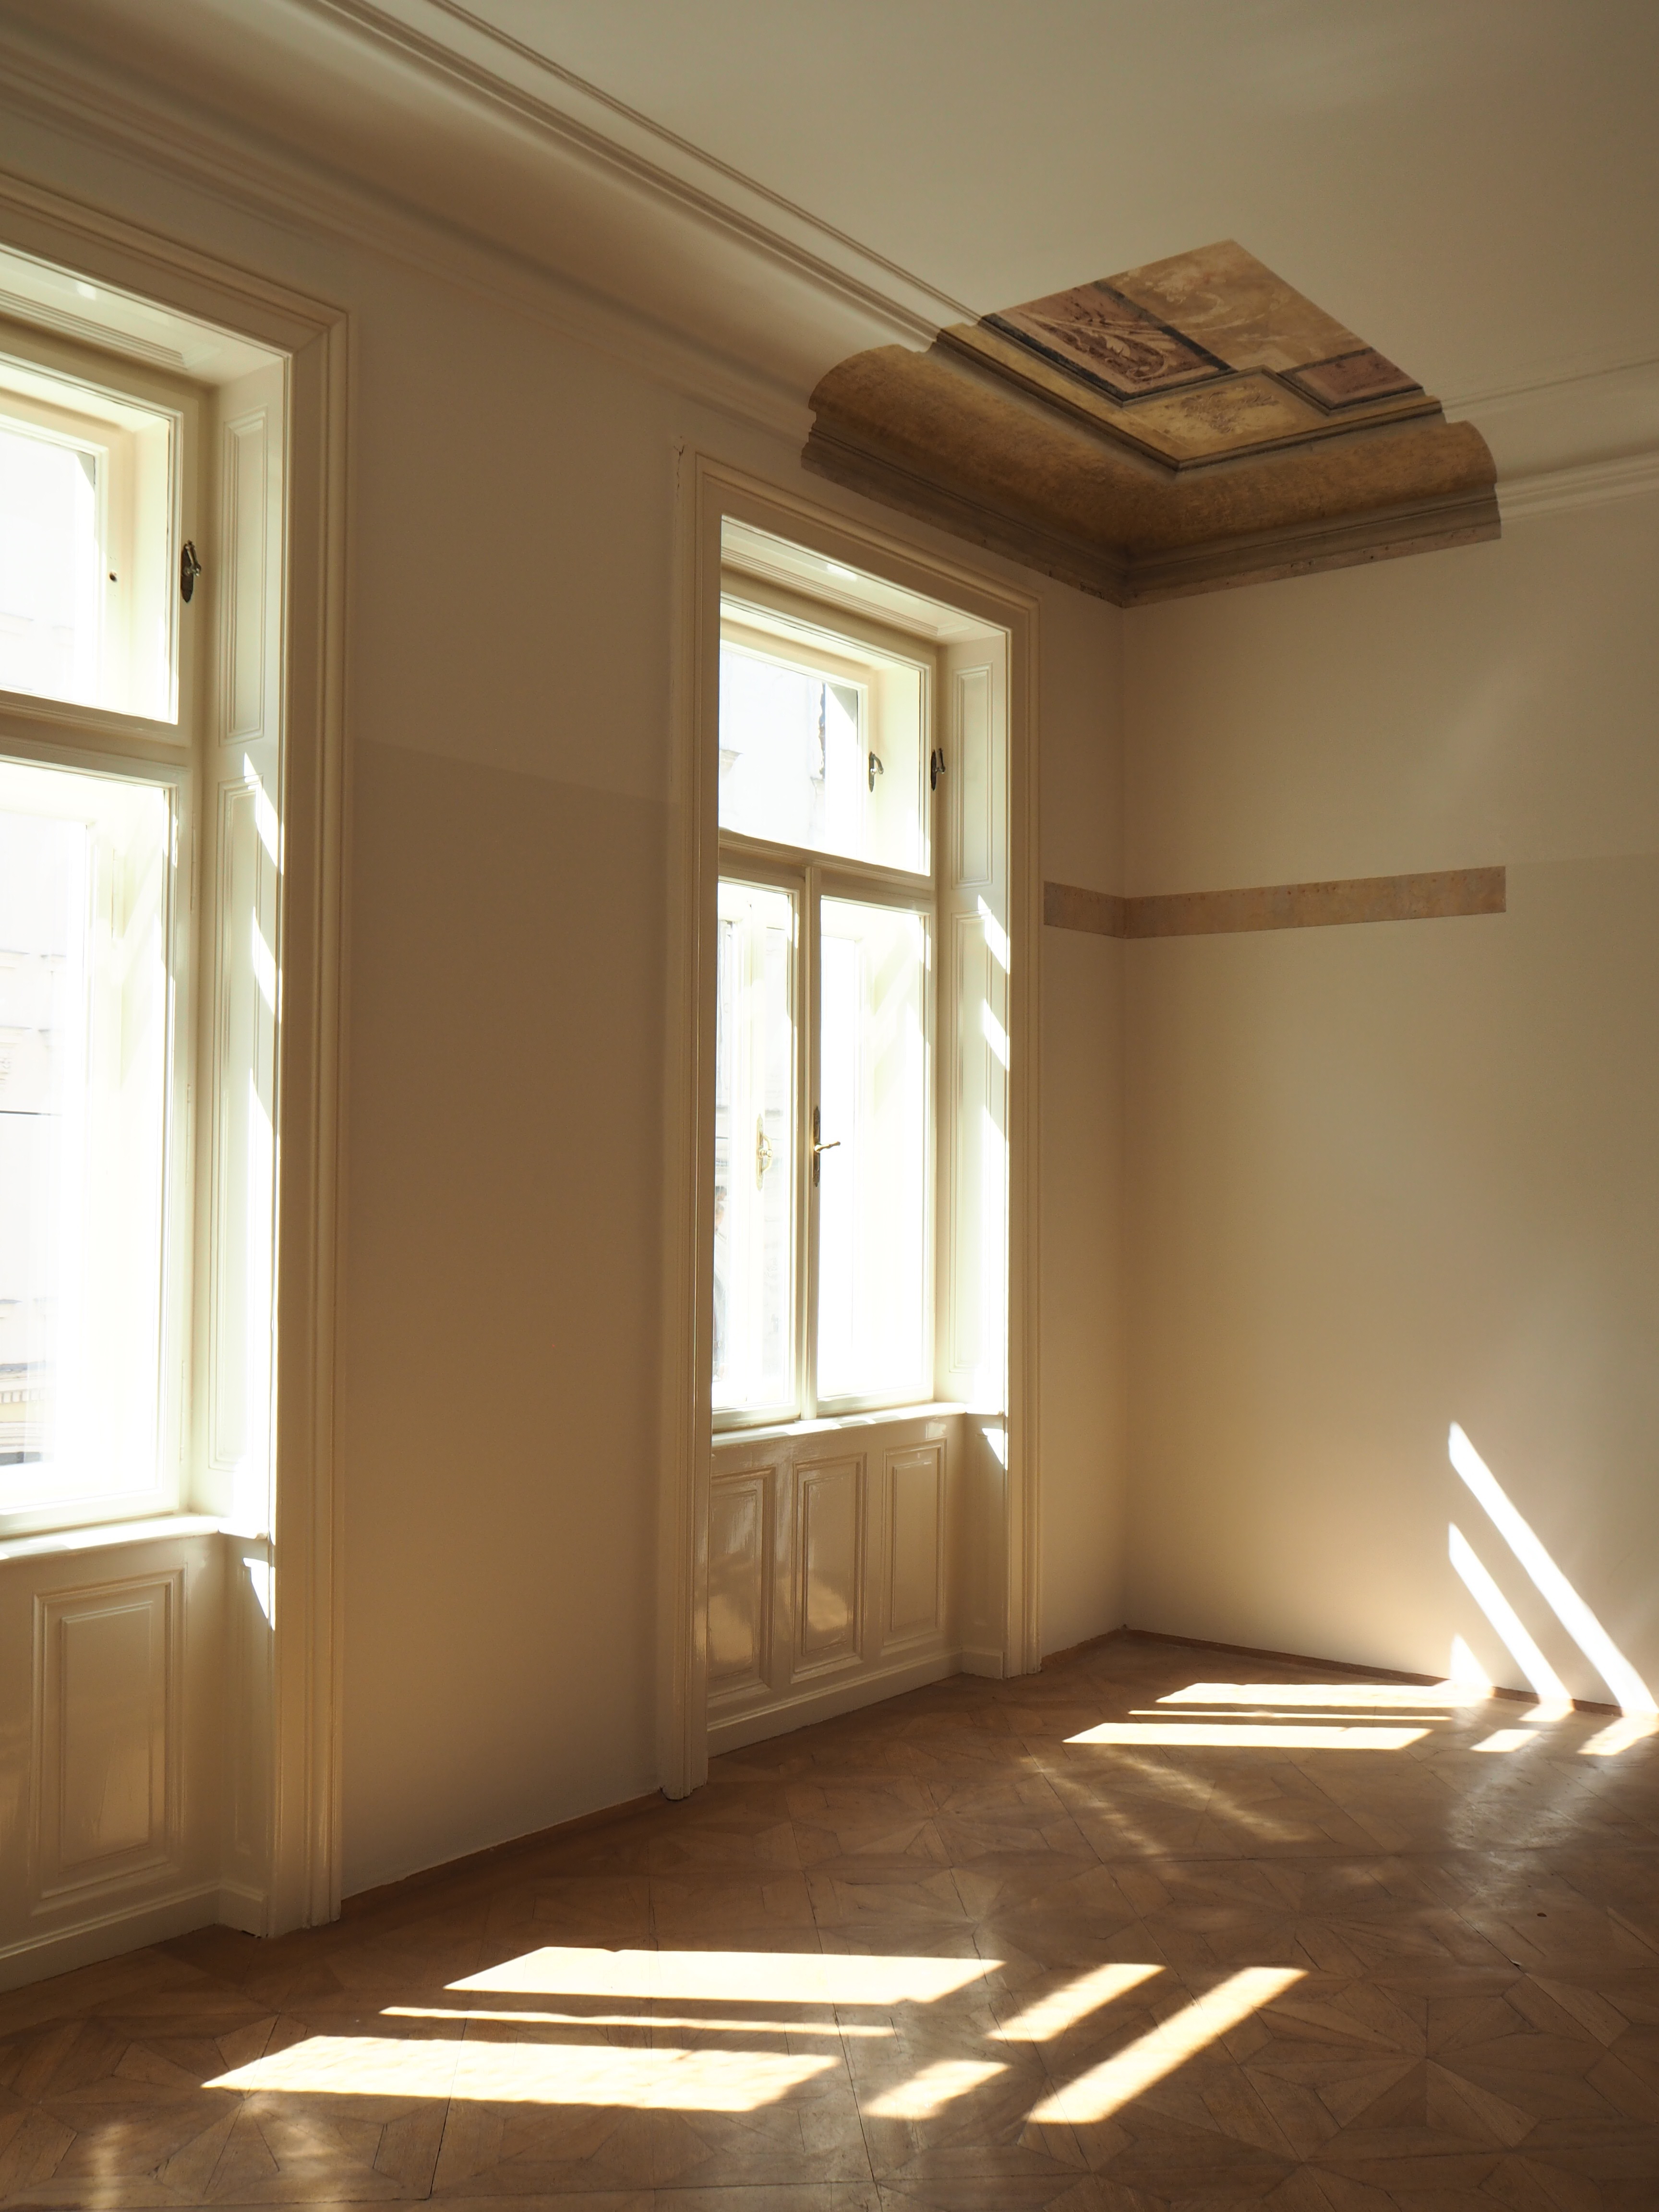 Détail de la chambre Anna Freud avec la fresque du plafond mise à nue 